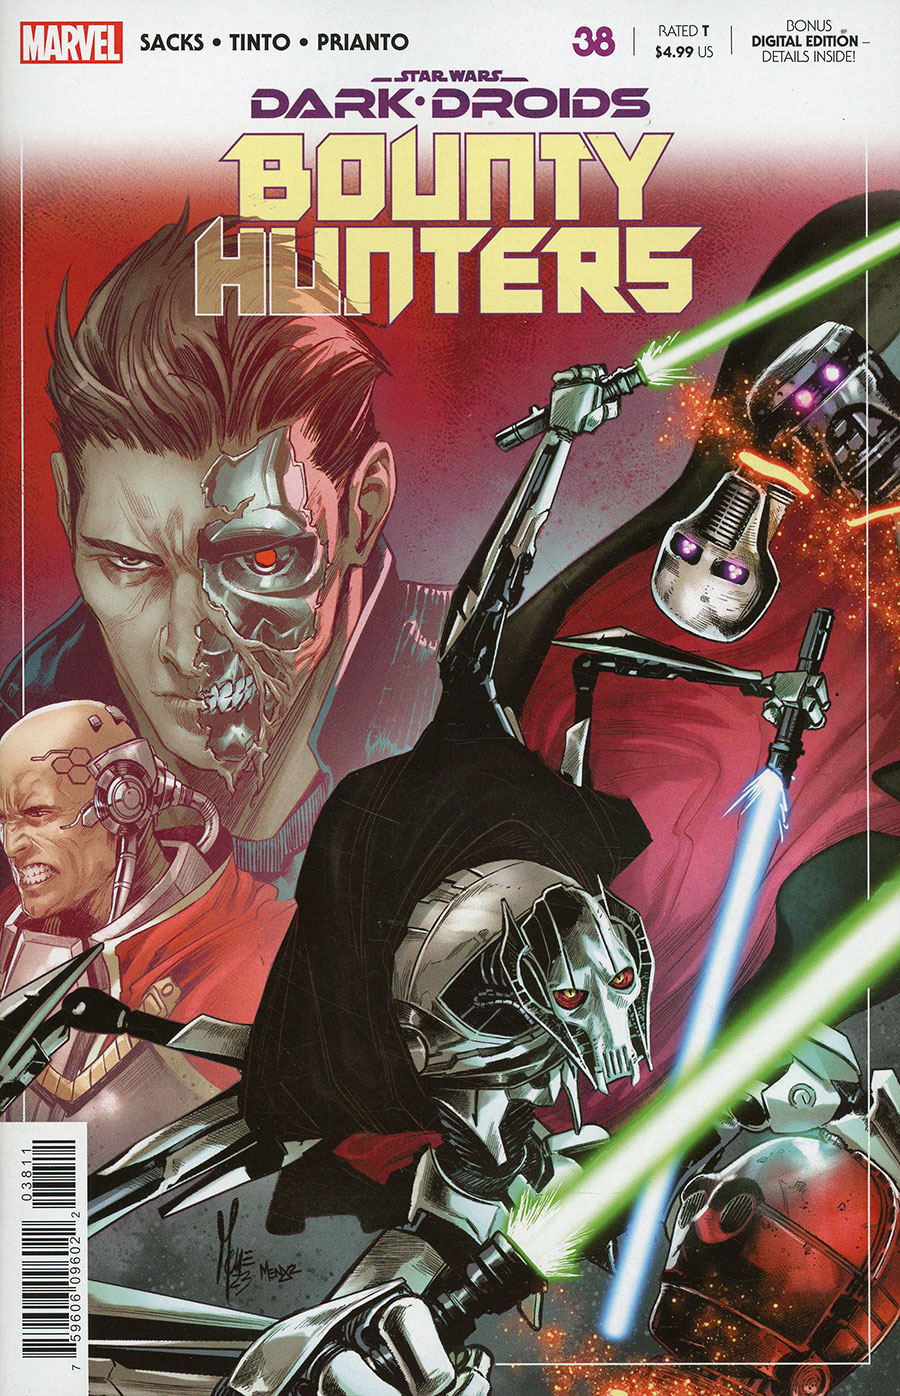 Star Wars Bounty Hunters #38 Cover A Regular Marco Checchetto Cover (Dark Droids Tie-In) (Limit 1 Per Customer)